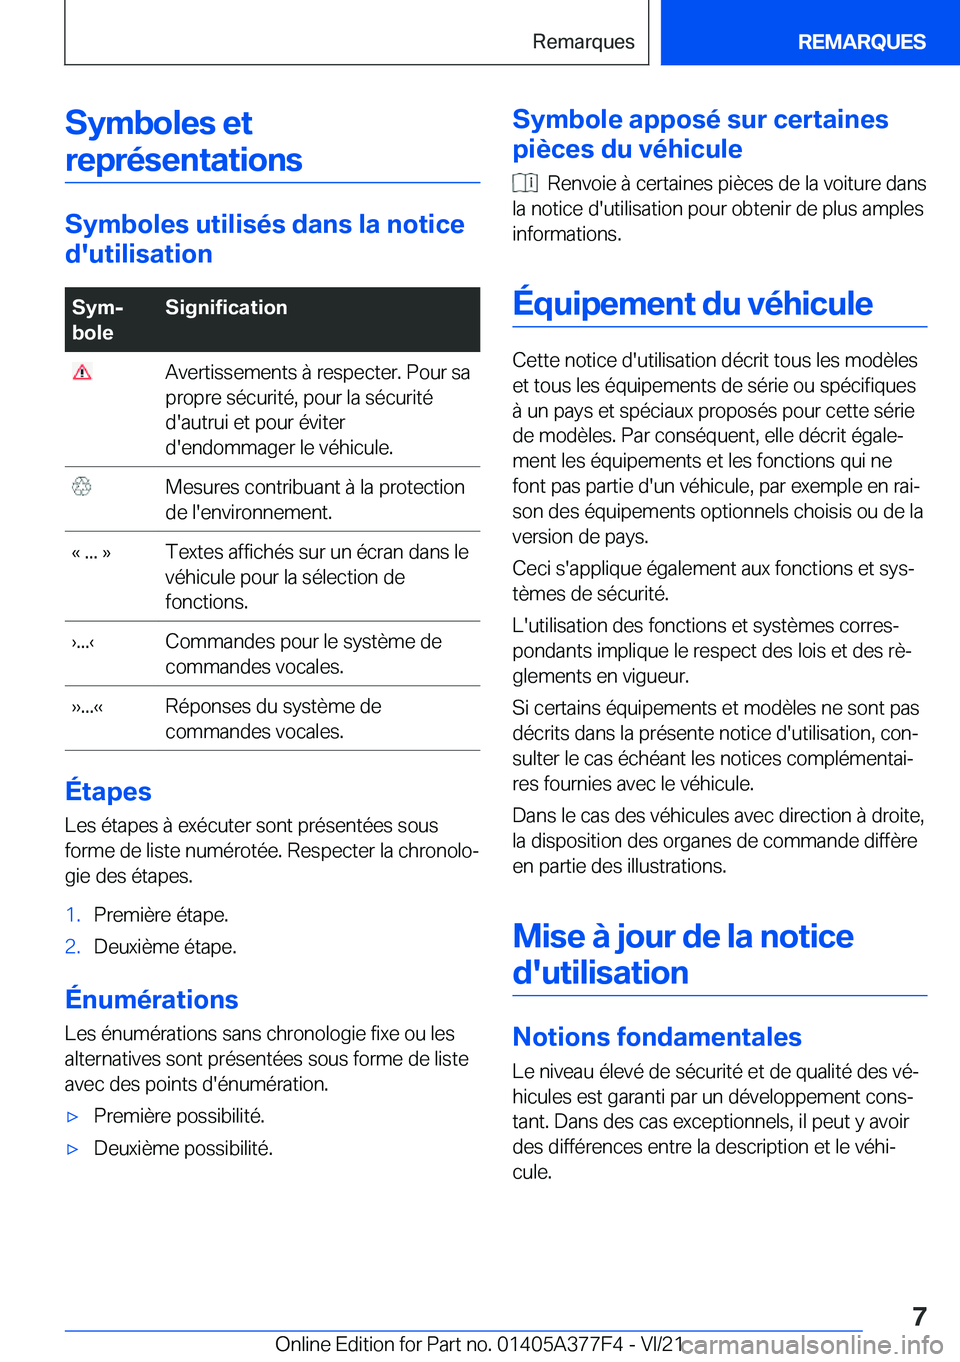 BMW X3 M 2022  Notices Demploi (in French) �S�y�m�b�o�l�e�s��e�t�r�e�p�r�é�s�e�n�t�a�t�i�o�n�s
�S�y�m�b�o�l�e�s��u�t�i�l�i�s�é�s��d�a�n�s��l�a��n�o�t�i�c�e
�d�'�u�t�i�l�i�s�a�t�i�o�n
�S�y�mj
�b�o�l�e�S�i�g�n�i�f�i�c�a�t�i�o�n��A�v